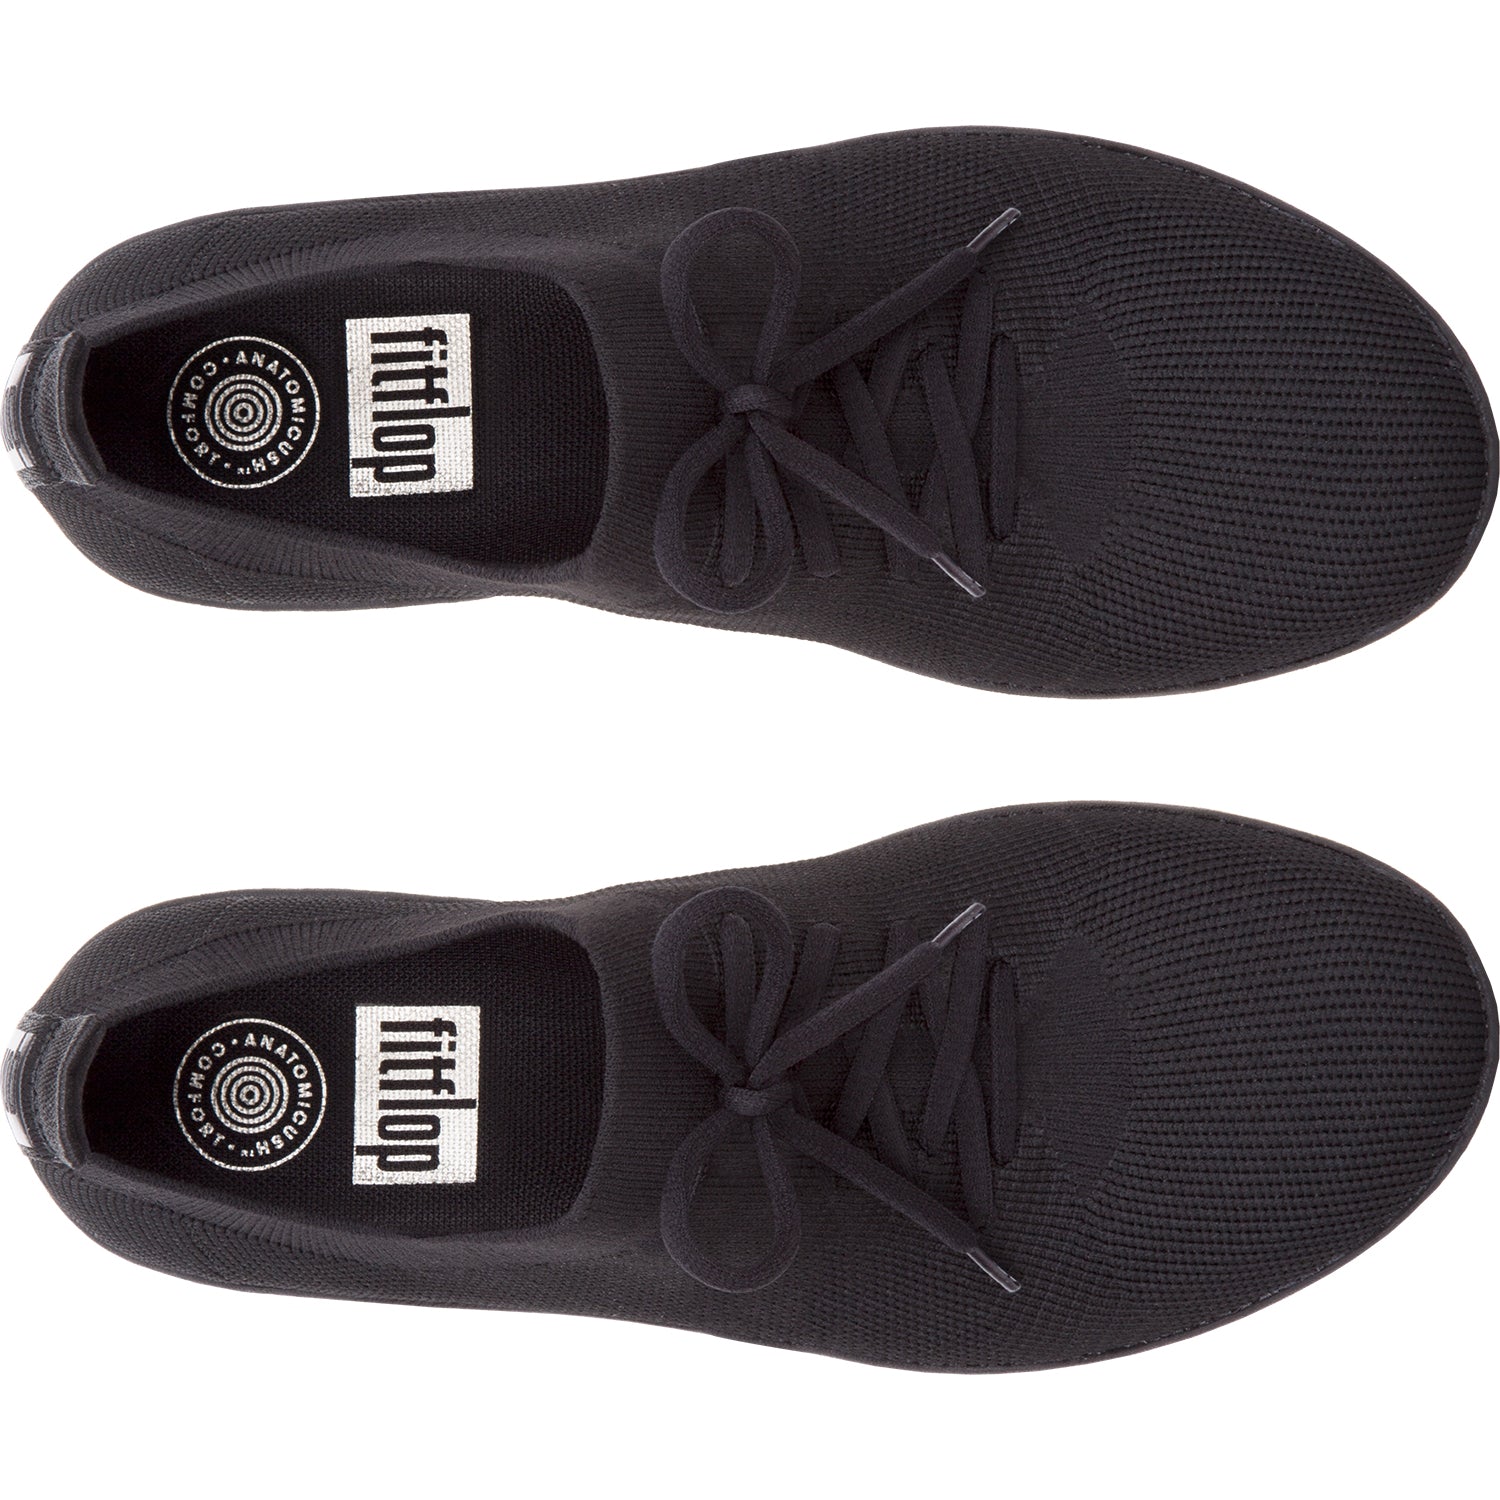 Buy FitFlop Women's FREEFLEX Sneaker, Black, 10 M US at Amazon.in